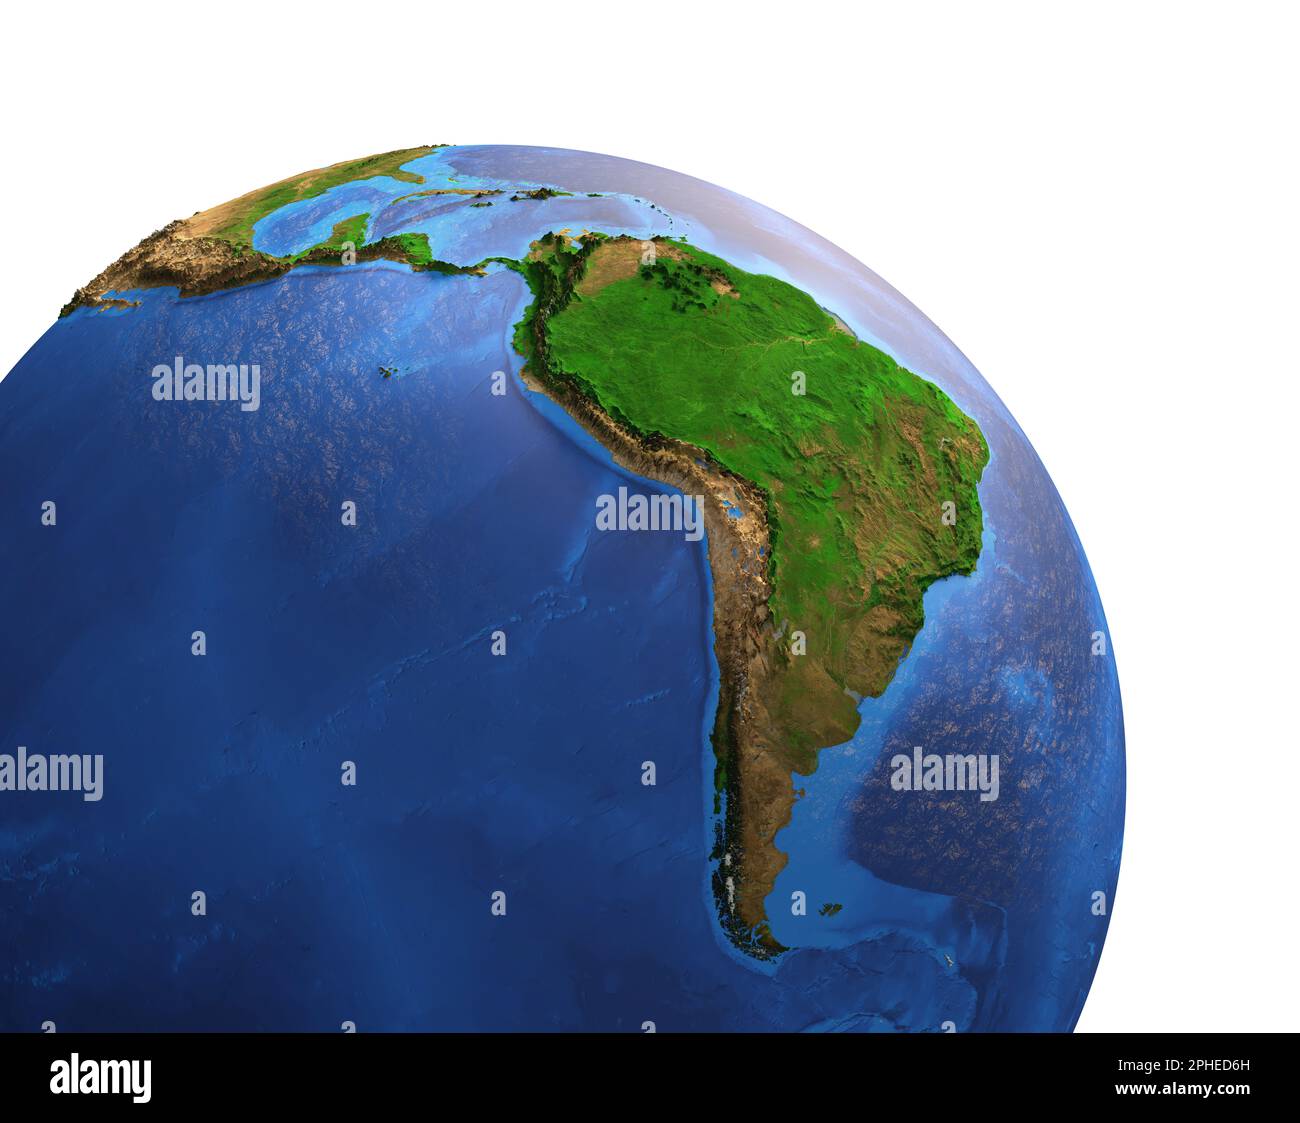 Hochauflösende Satellitenansicht des Planeten Erde mit Fokus auf Süd- und Mittelamerika, Brasilien und Amazonas Rainforest - Elemente der NASA Stockfoto